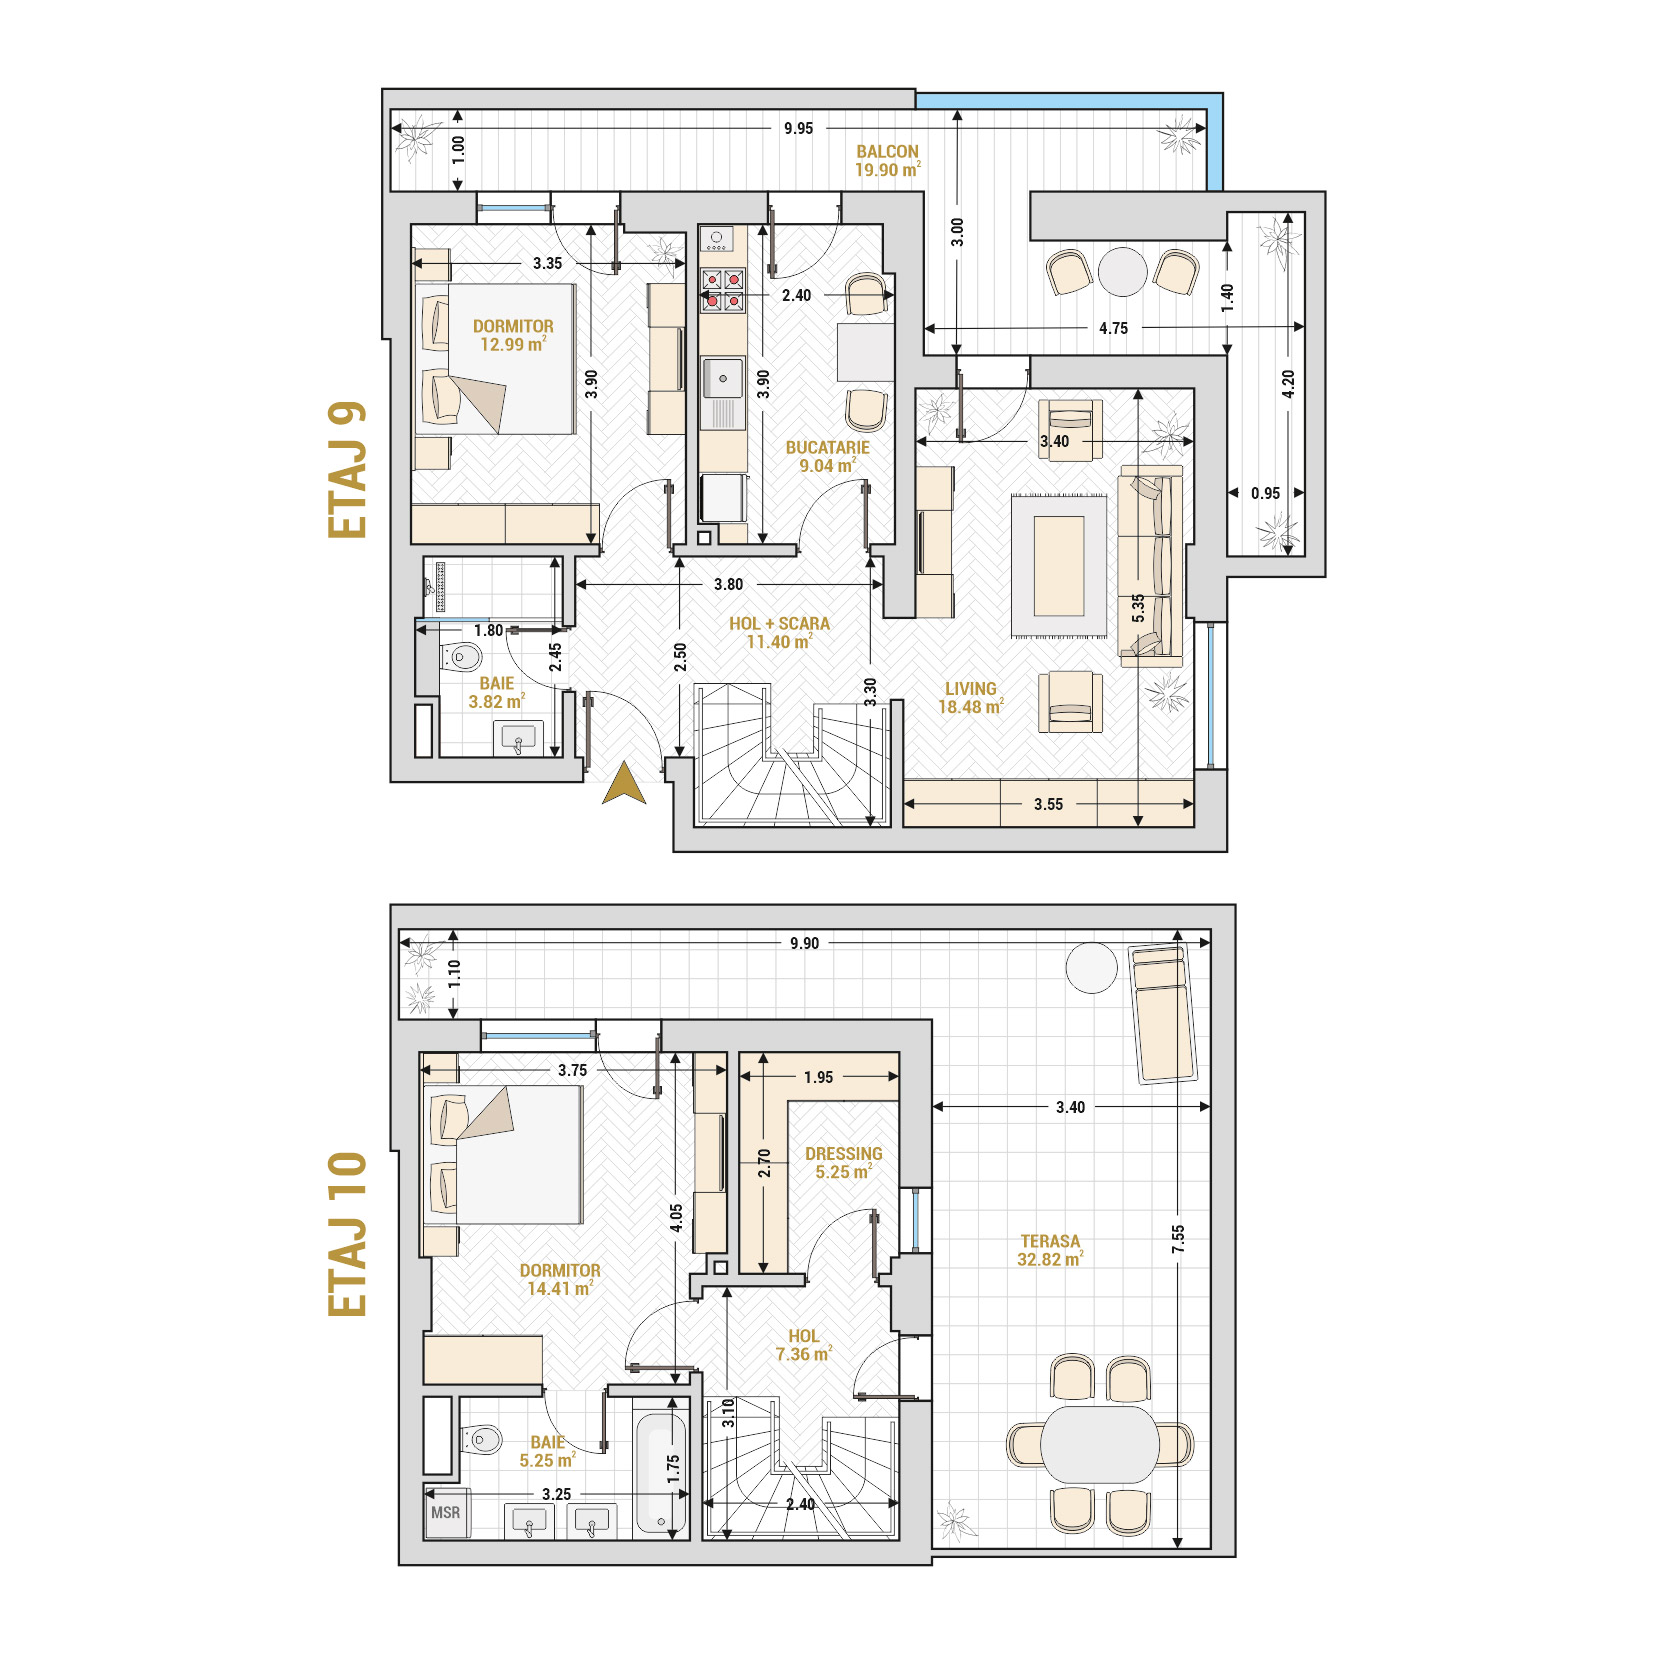 Penthouse 3 Camere Tip 2 Corp 5 - Drumul Taberei Residence - Apartamente de vanzare Bucuresti - Suprafata utila totala - 140.72 mp